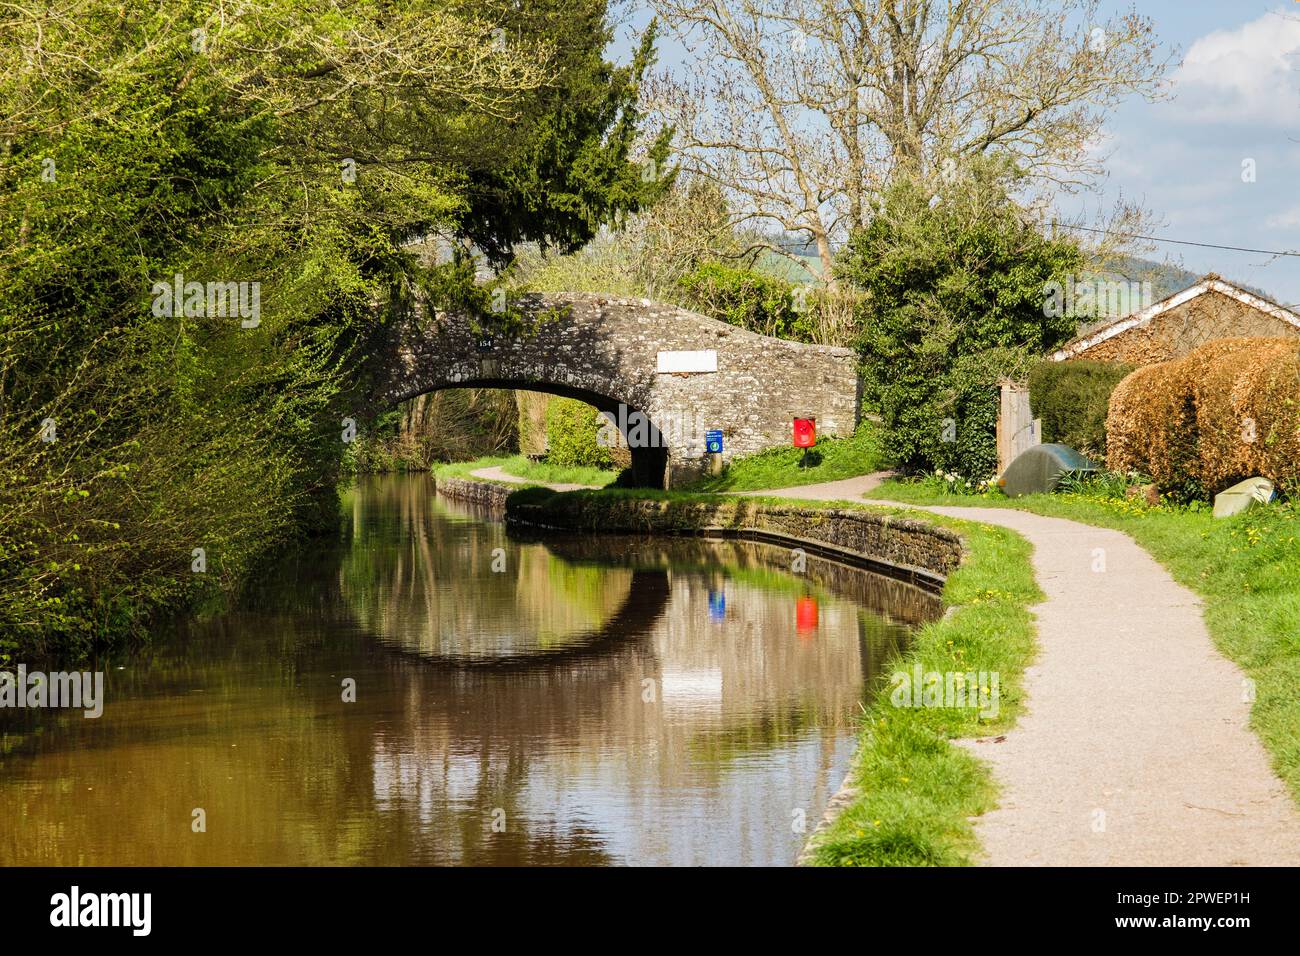 Chemin de halage et ancien pont 154 sur le canal Monbucshire et Brecon. Pencelli, Brecon, Powys, pays de Galles, Royaume-Uni, Grande-Bretagne, Europe. Le Taff Trail suit la trajectoire de remorquage Banque D'Images